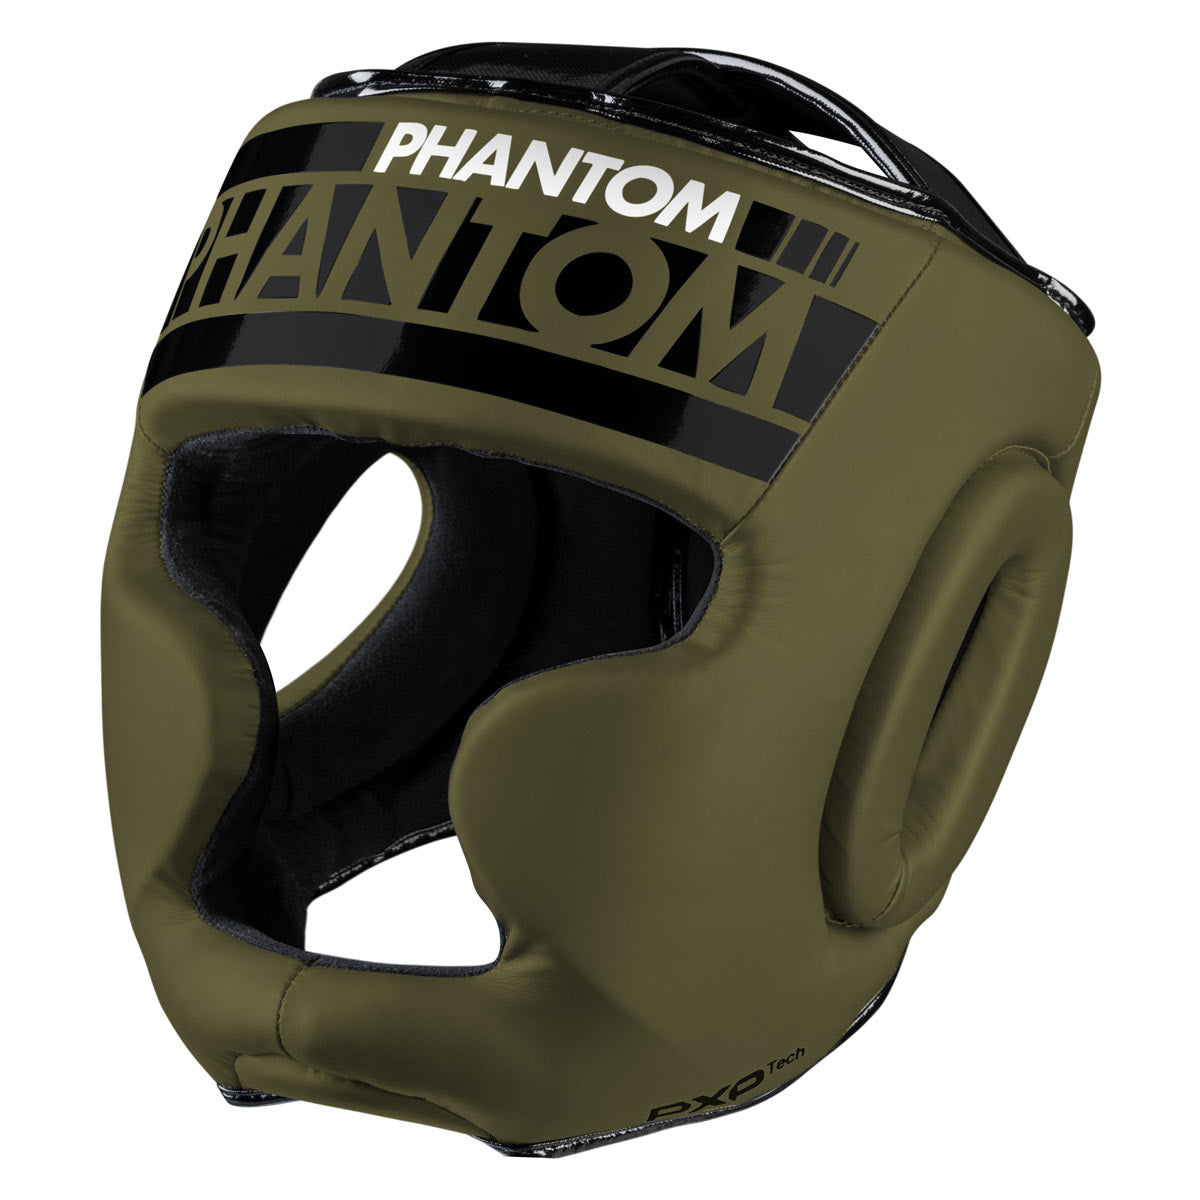 Der Phantom APEX Full Face Kopfschutz für Kampfsport